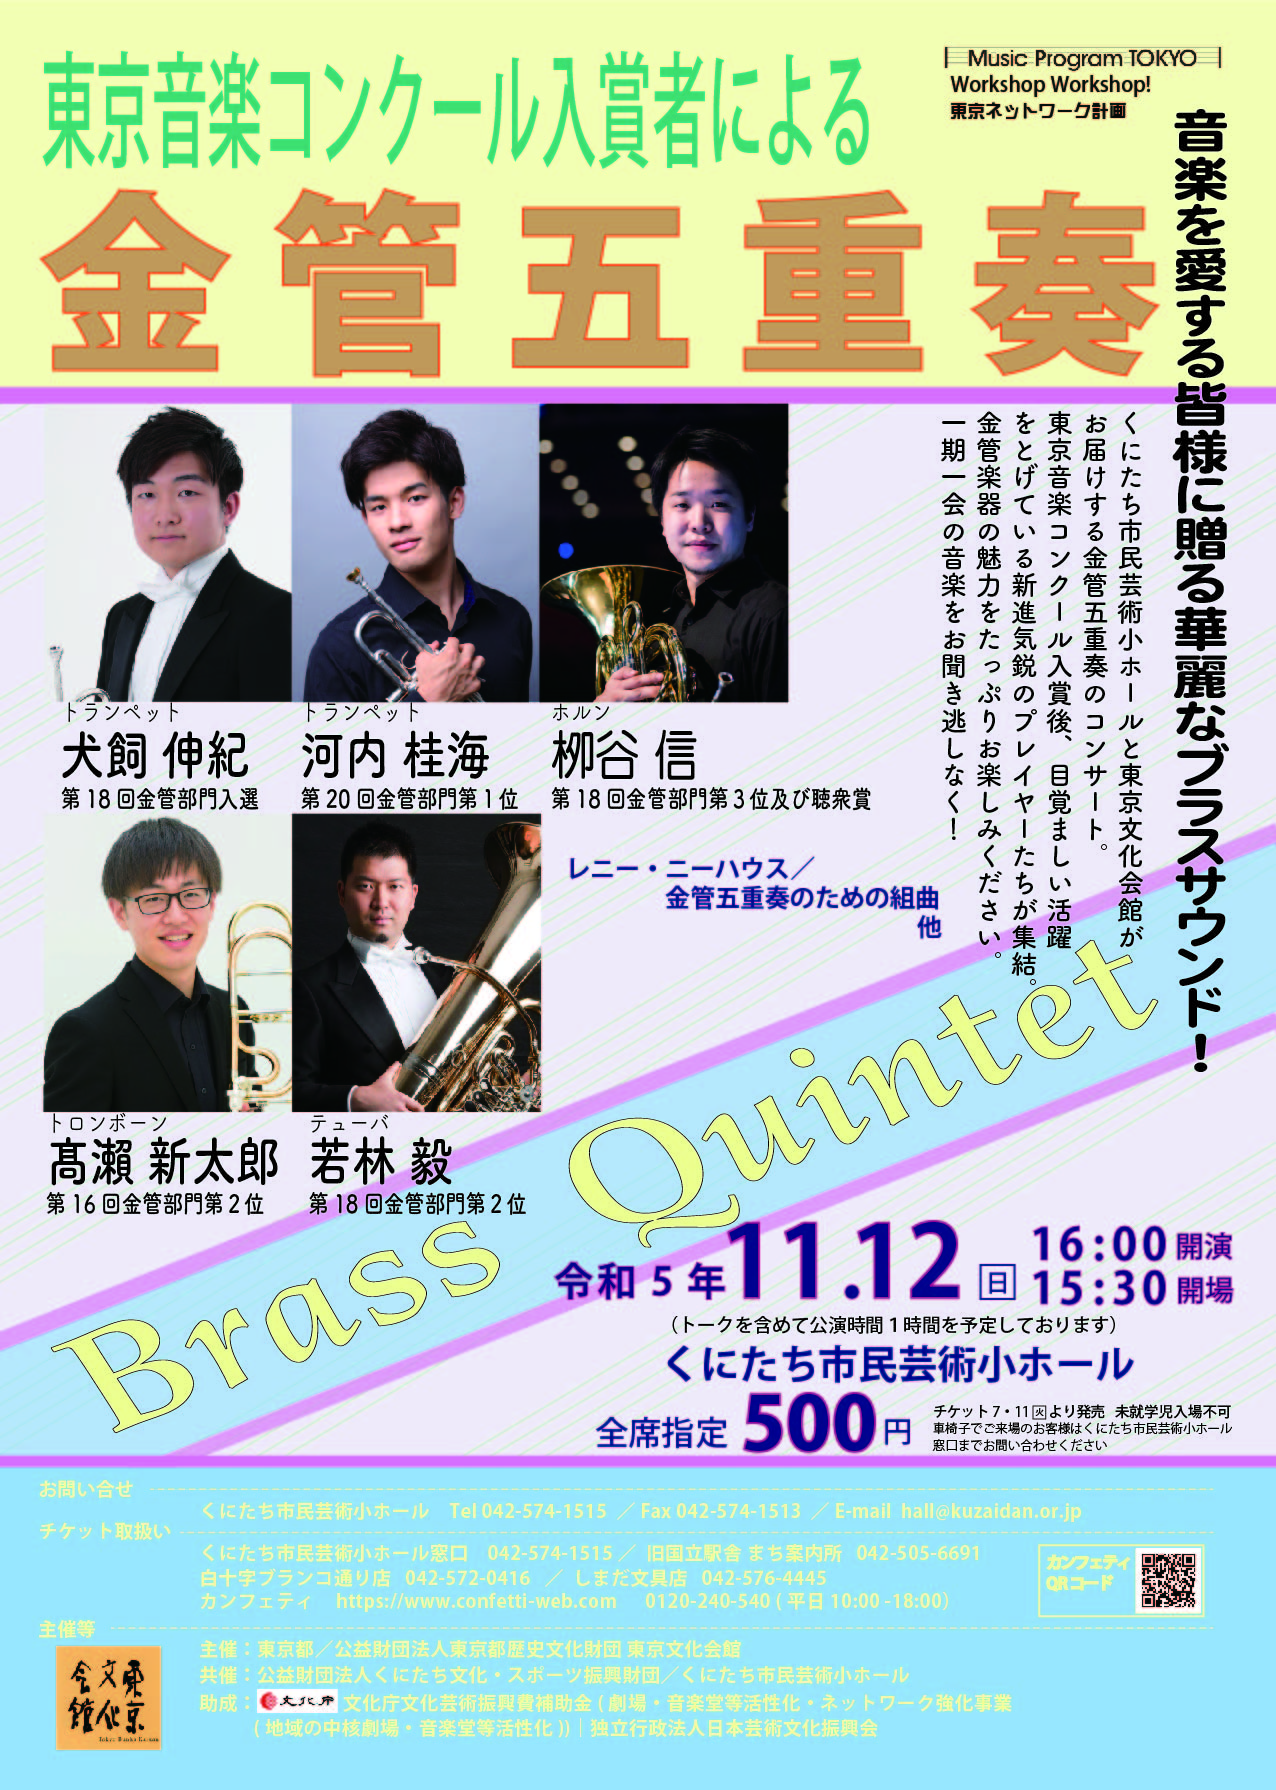 東京音楽コンクール入賞者による金管五重奏